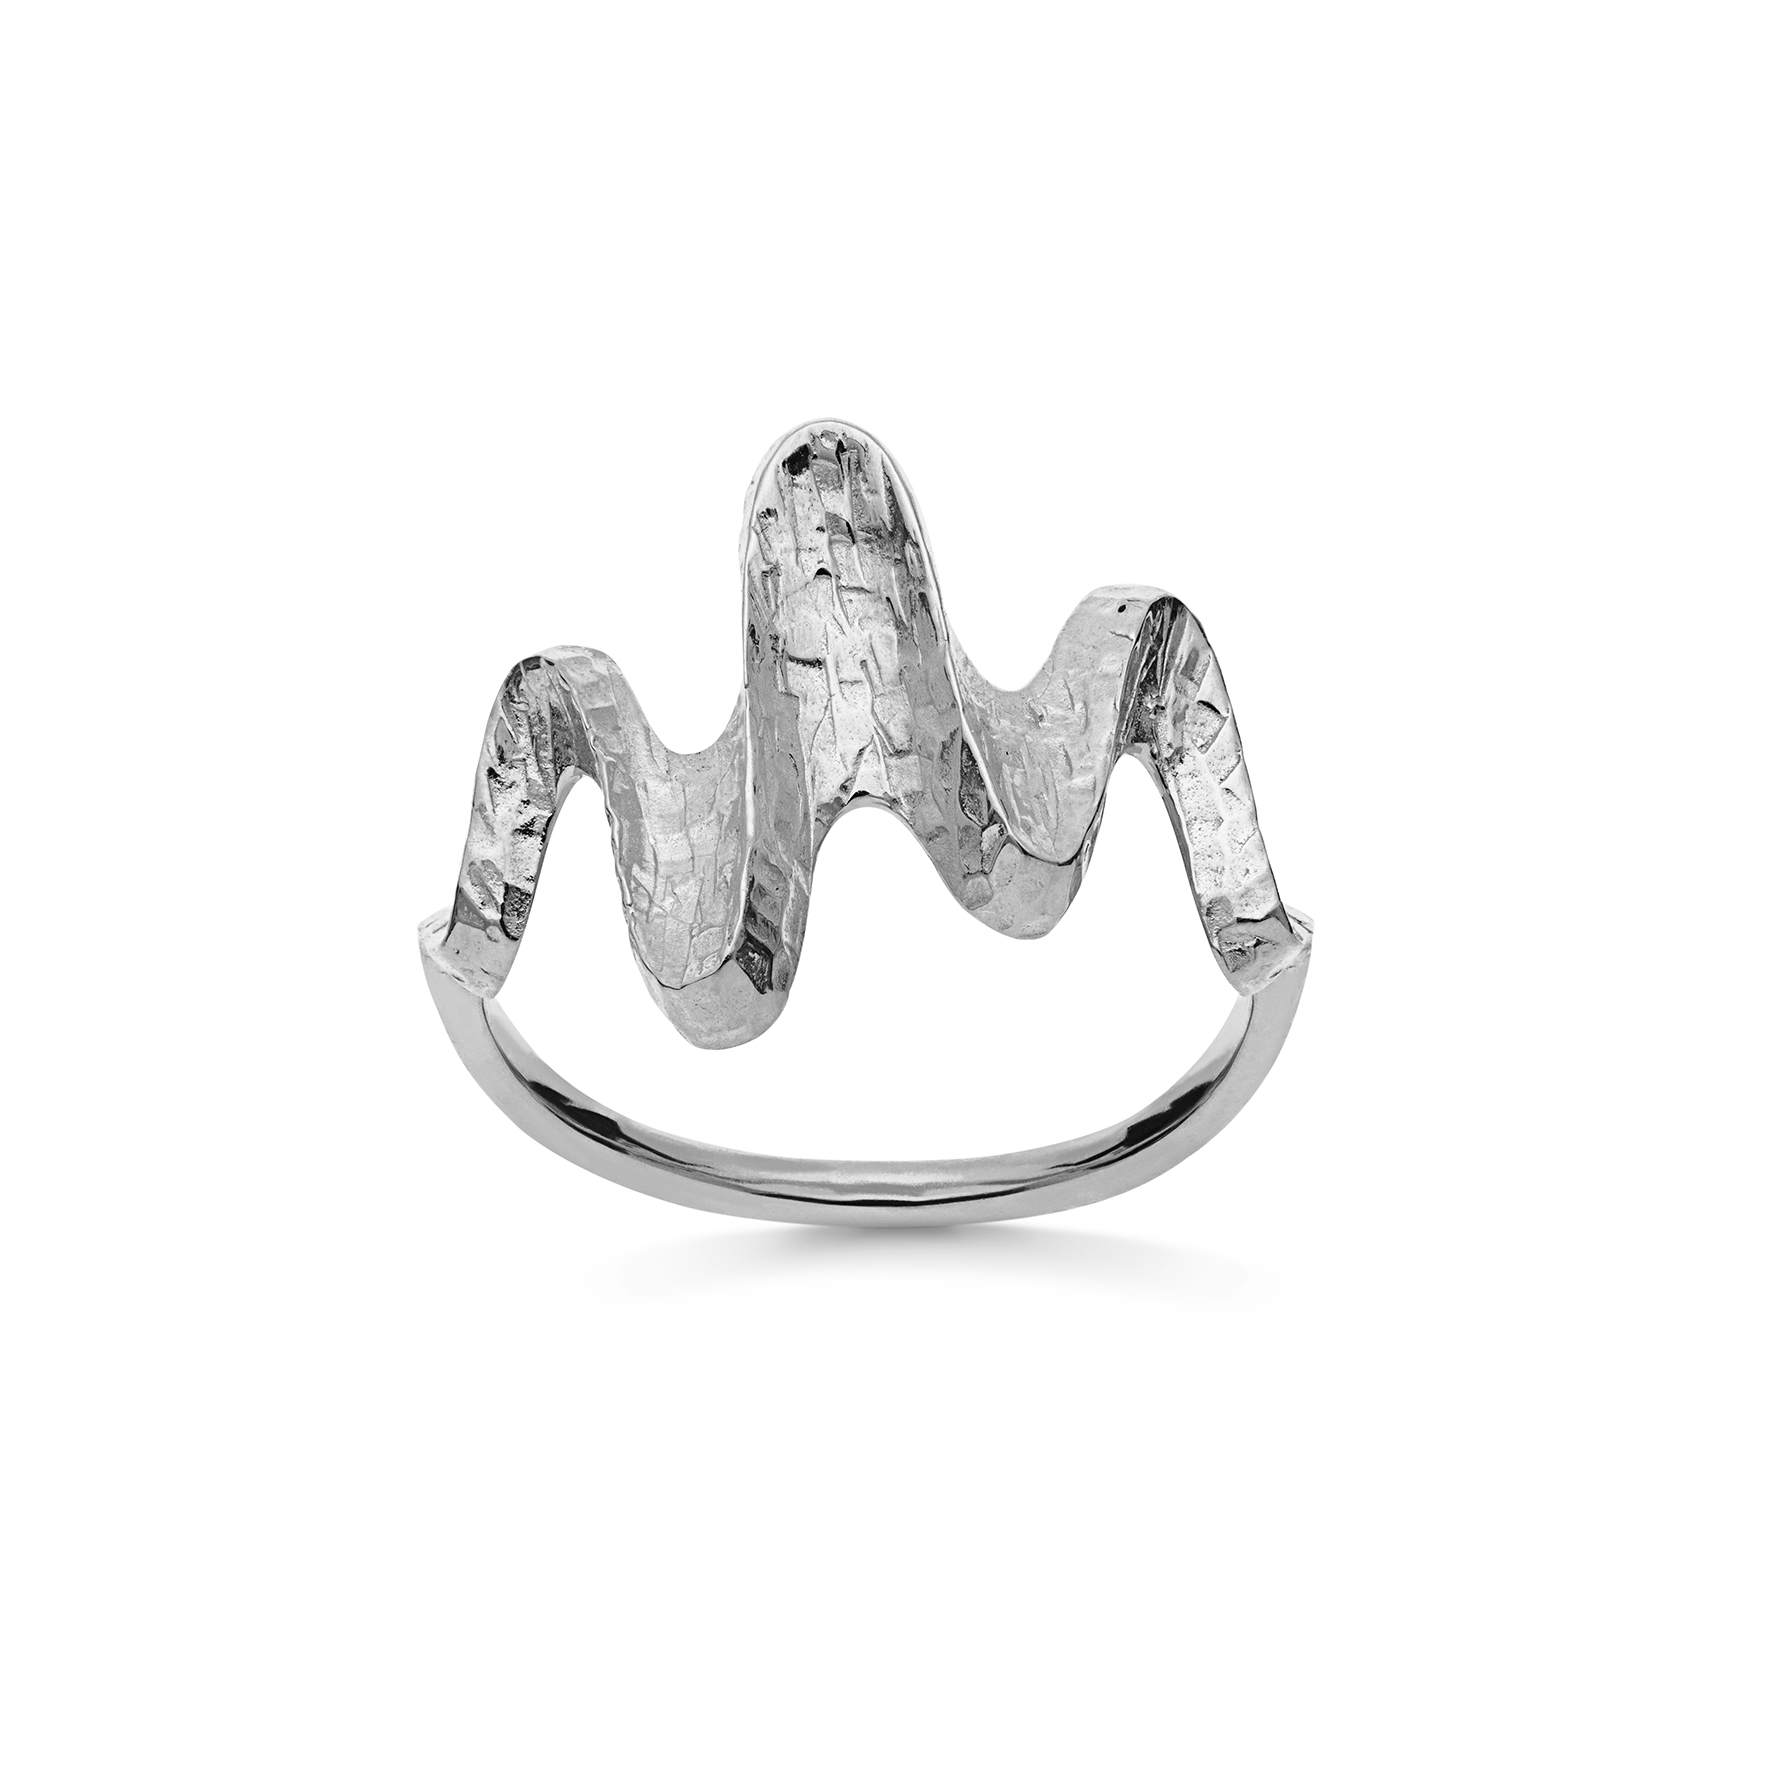 Mose Ufrugtbar Selvrespekt Bay ring fra Maanesten i Sølv Sterling 925| Hammerslåede,Blank